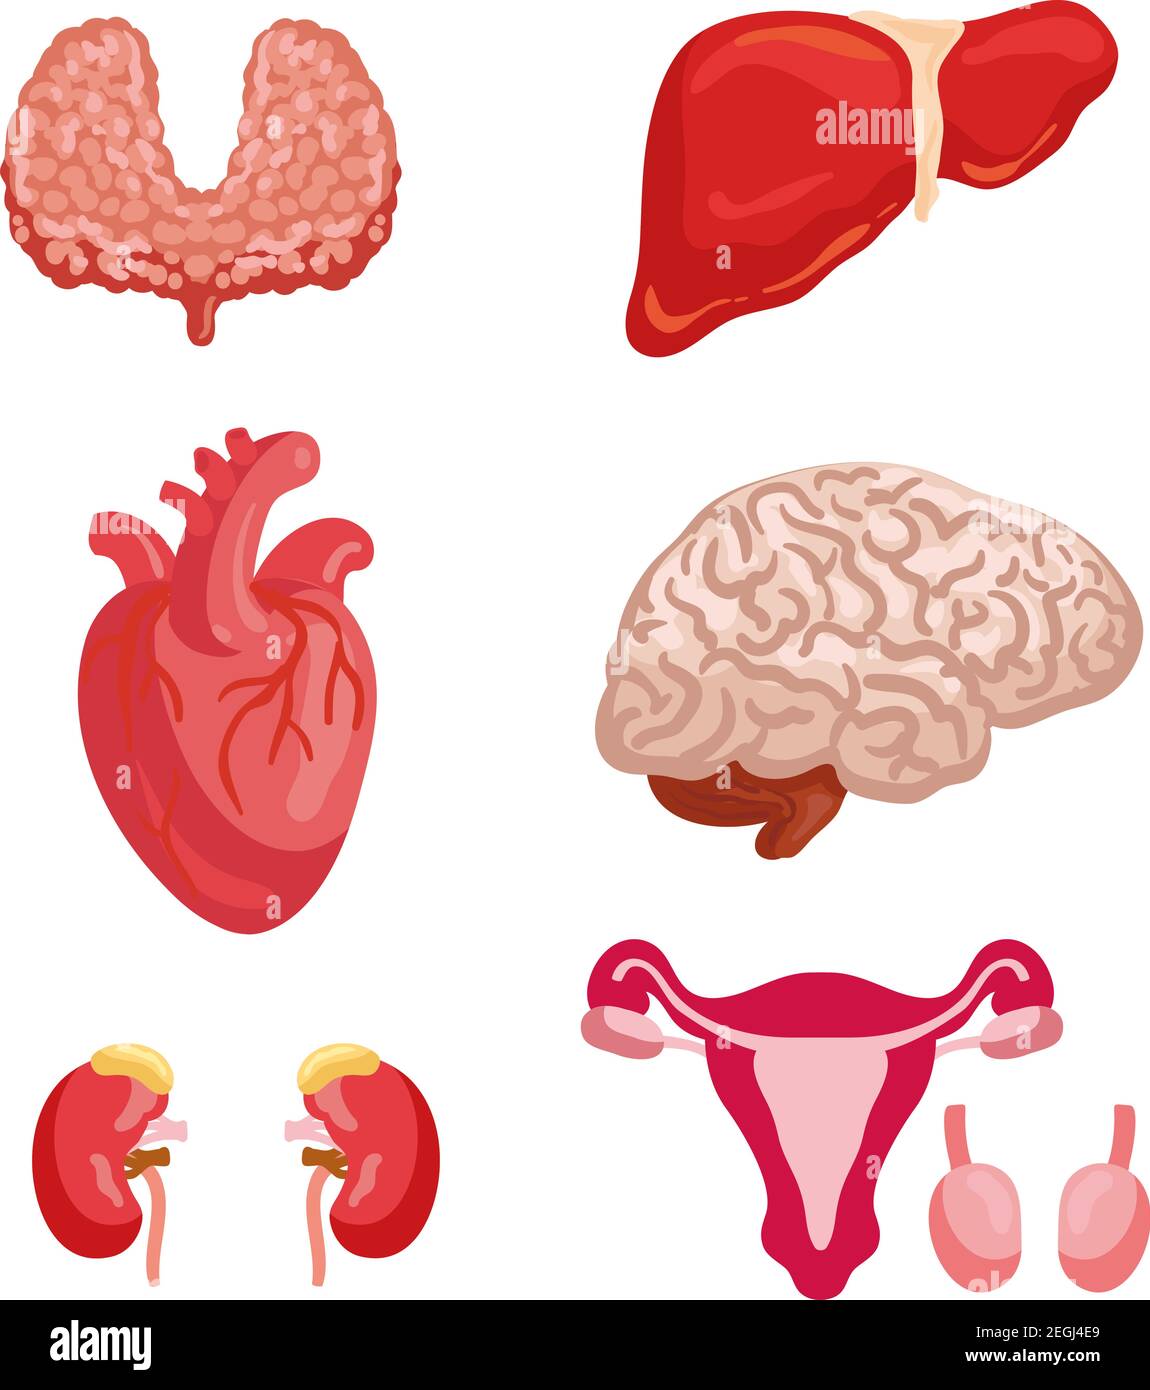 Menschliche Organanatomie Cartoon Icon Set mit internen Organ und Körper-System. Herz, Gehirn und Leber, Niere, Schilddrüse und weibliche Fortpflanzungssystem mit Stock Vektor